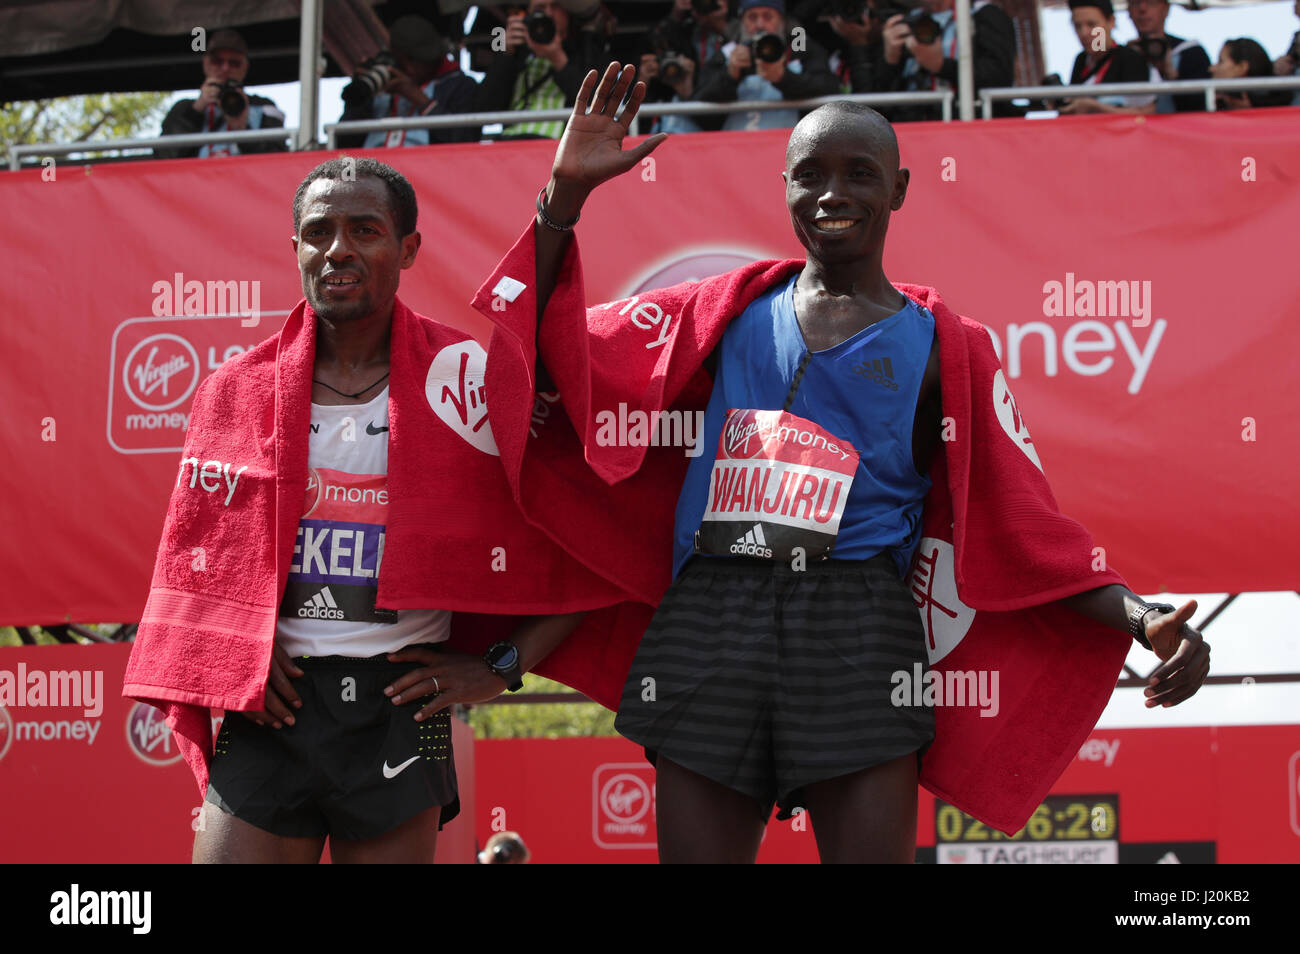 Kenias Daniel Wanjiru (rechts) gewinnt die Männer Jungfrau Geld London Marathon neben zweite platzierte Äthiopien Kenenisa Bekele. PRESS ASSOCIATION. Bild Datum: Sonntag, 23. April 2017. PA-Geschichte-Leichtathletik-Marathon zu sehen. Bildnachweis sollte lauten: Yui Mok/PA Wire Stockfoto